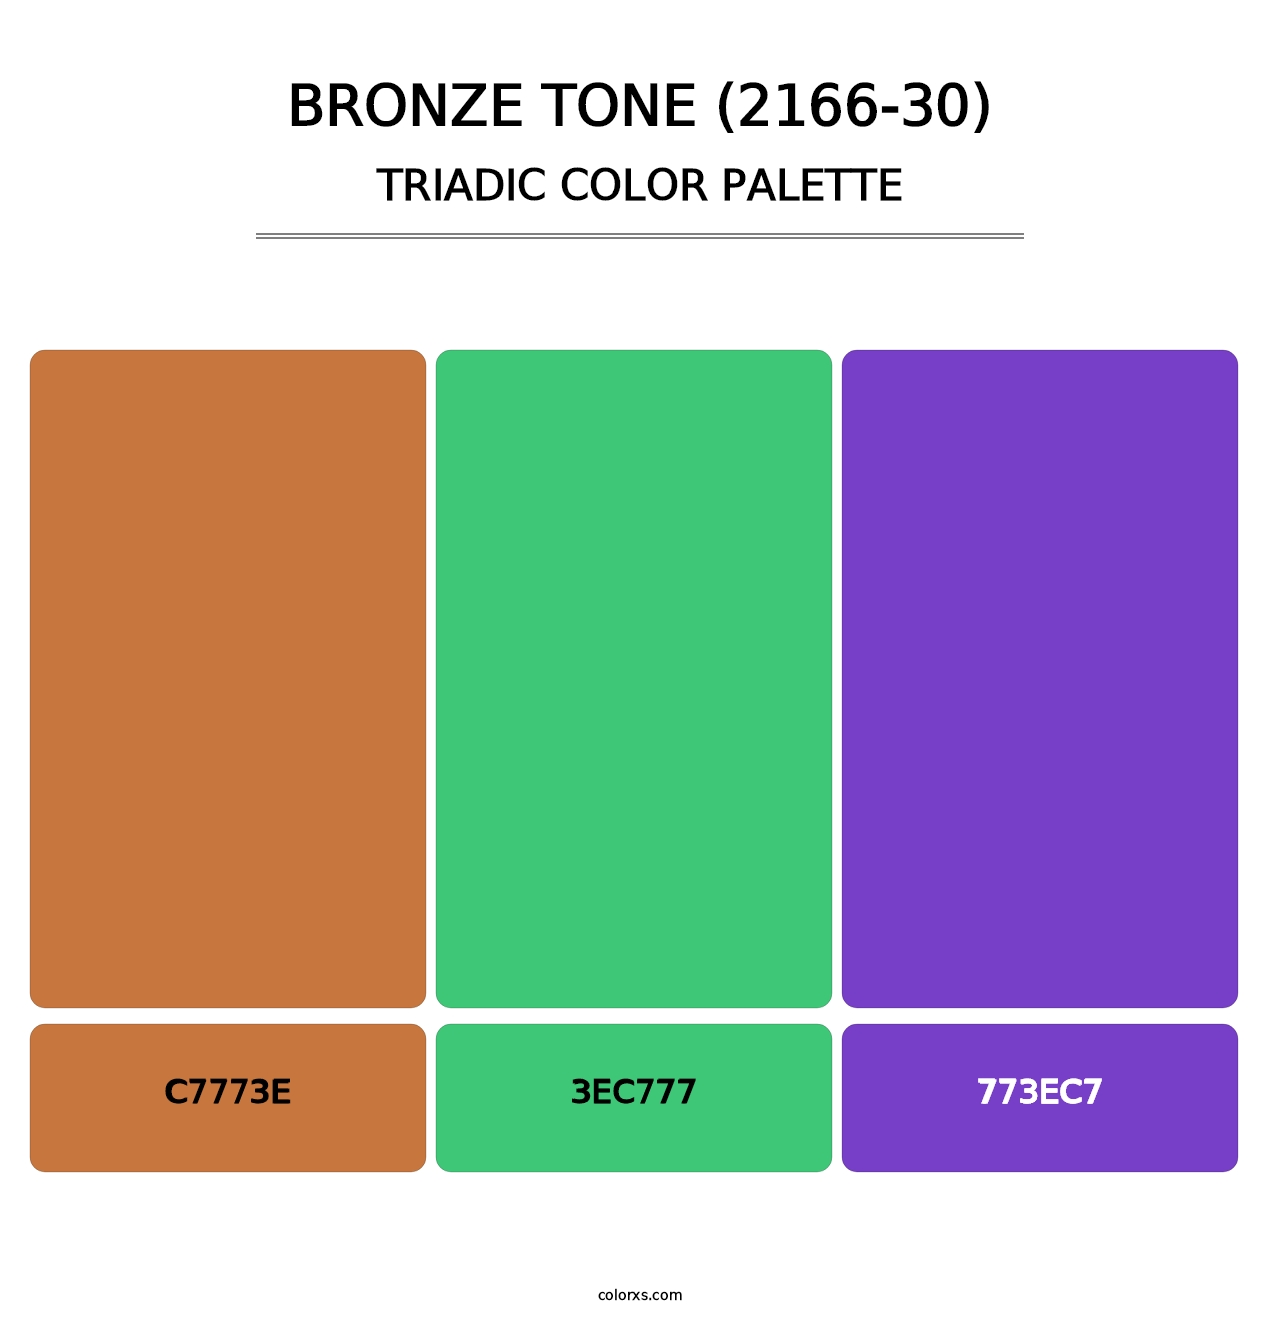 Bronze Tone (2166-30) - Triadic Color Palette